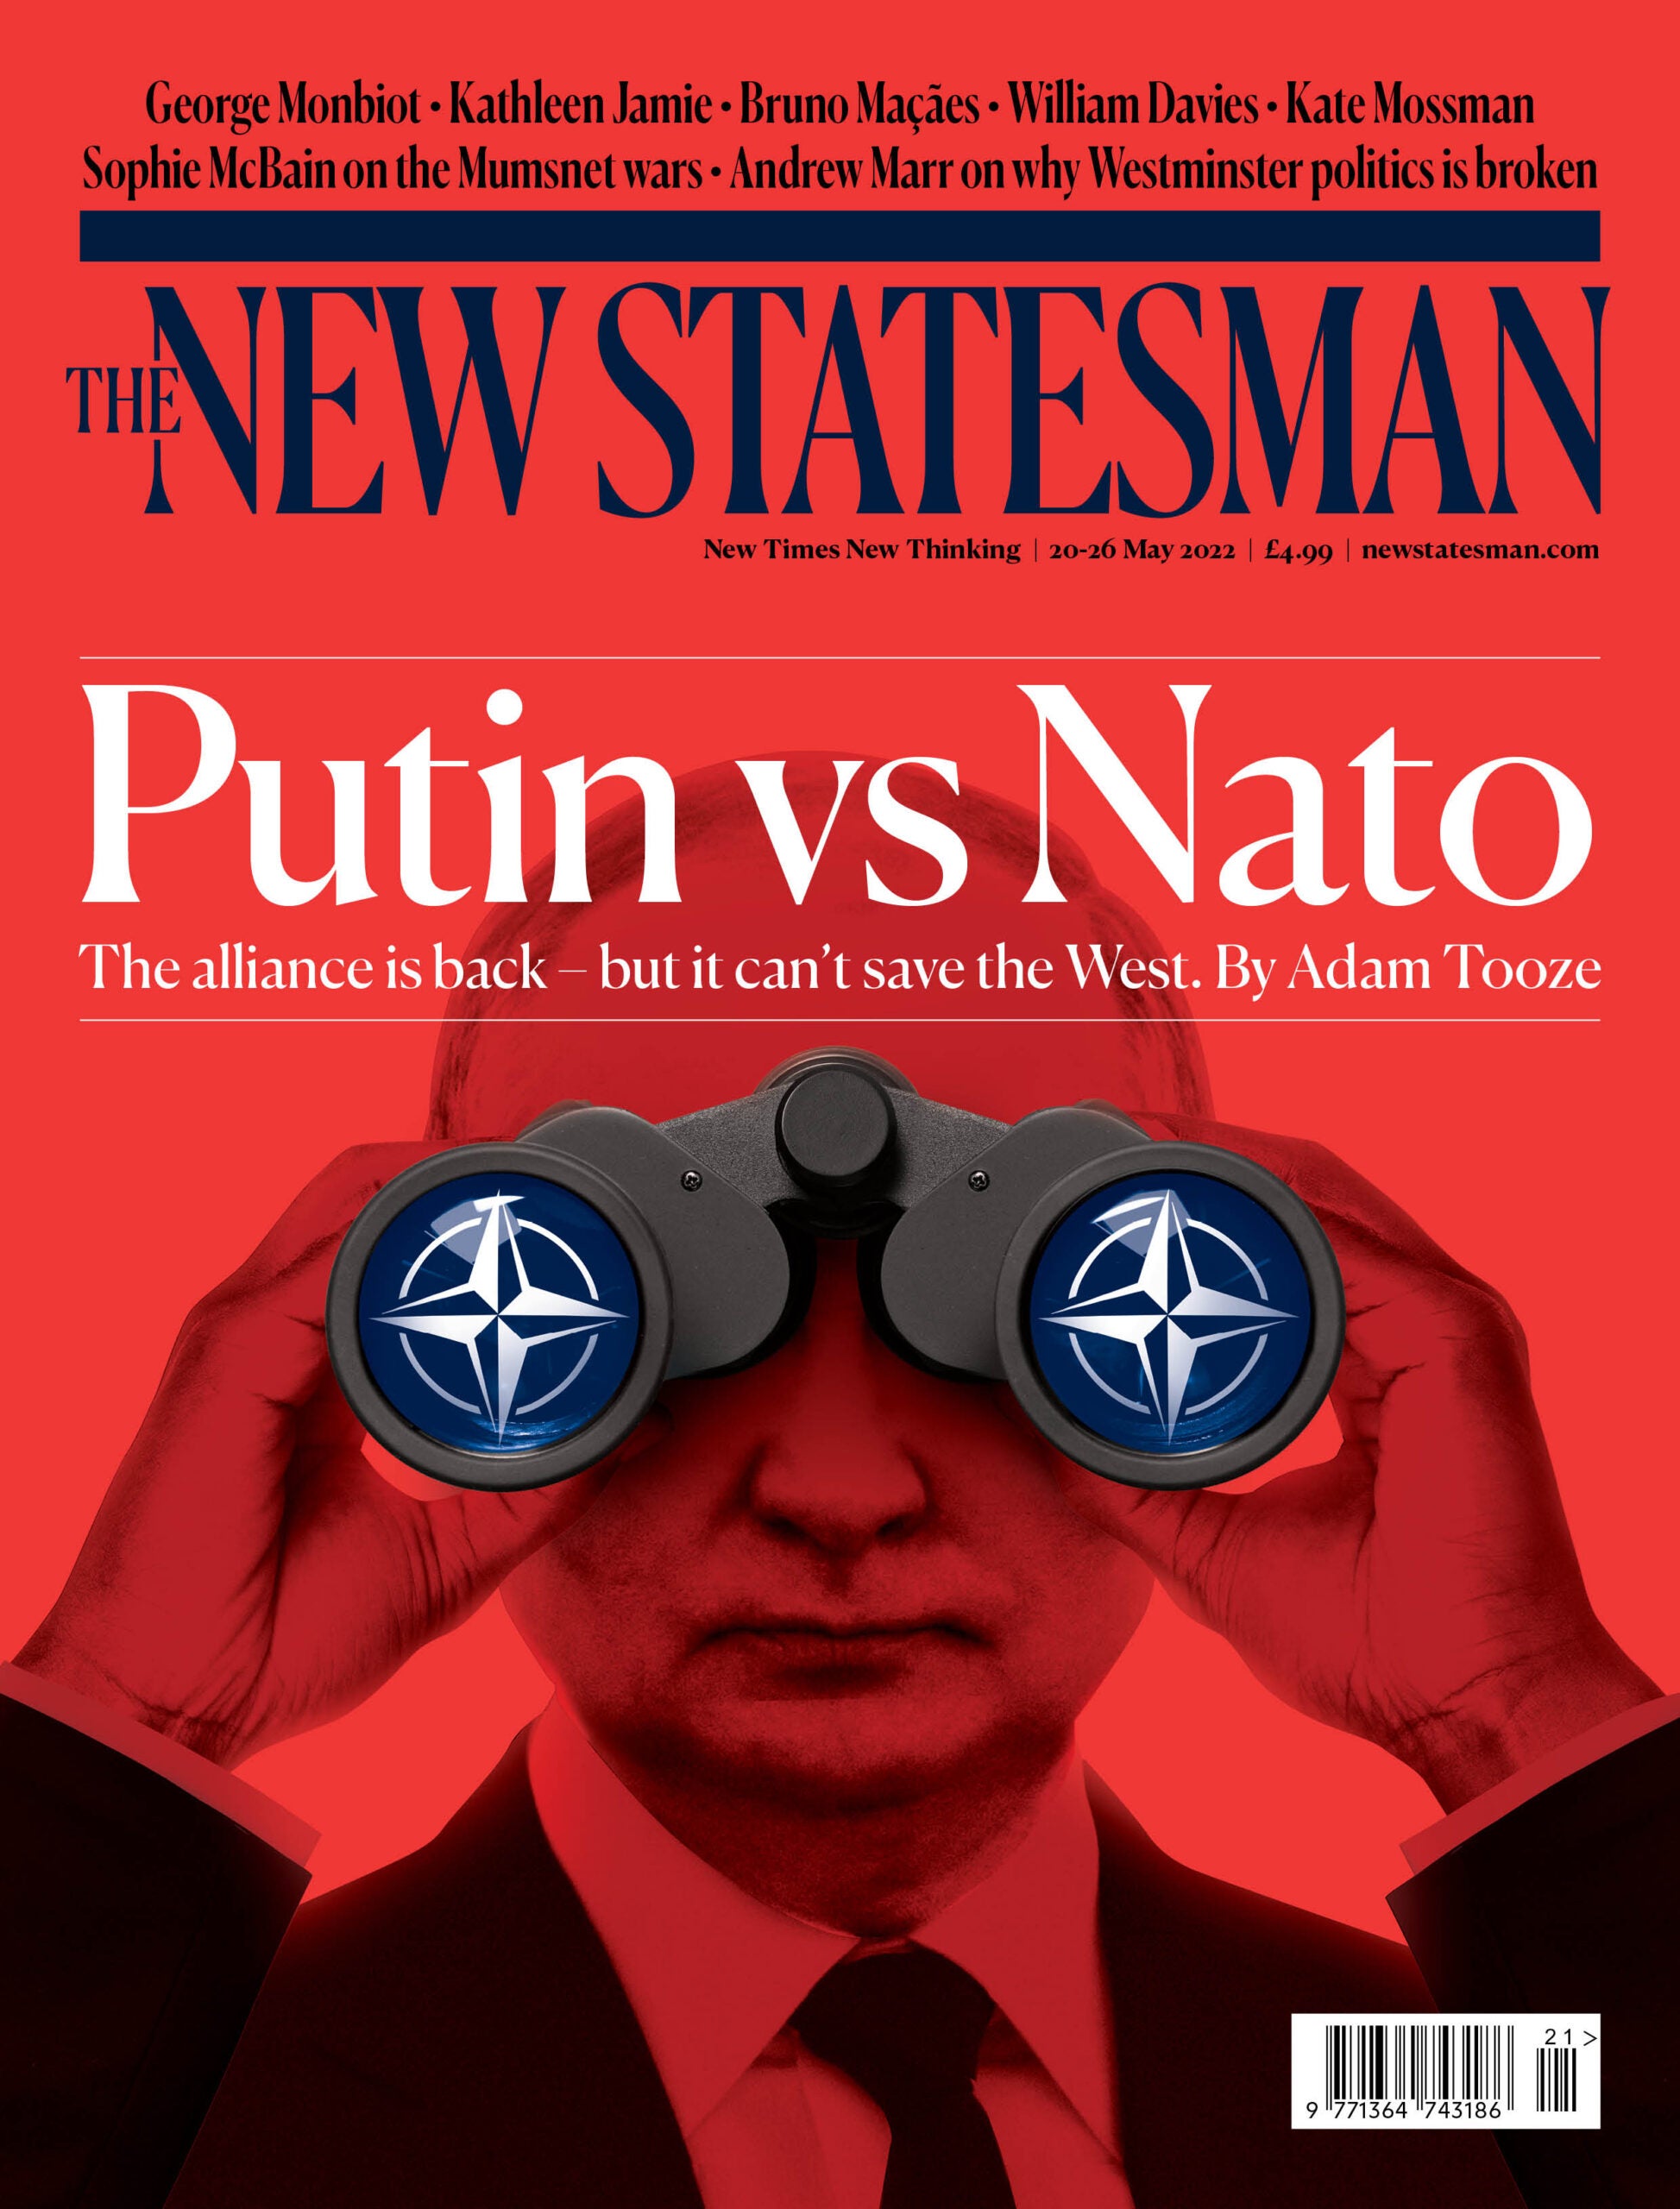 Putin vs Nato